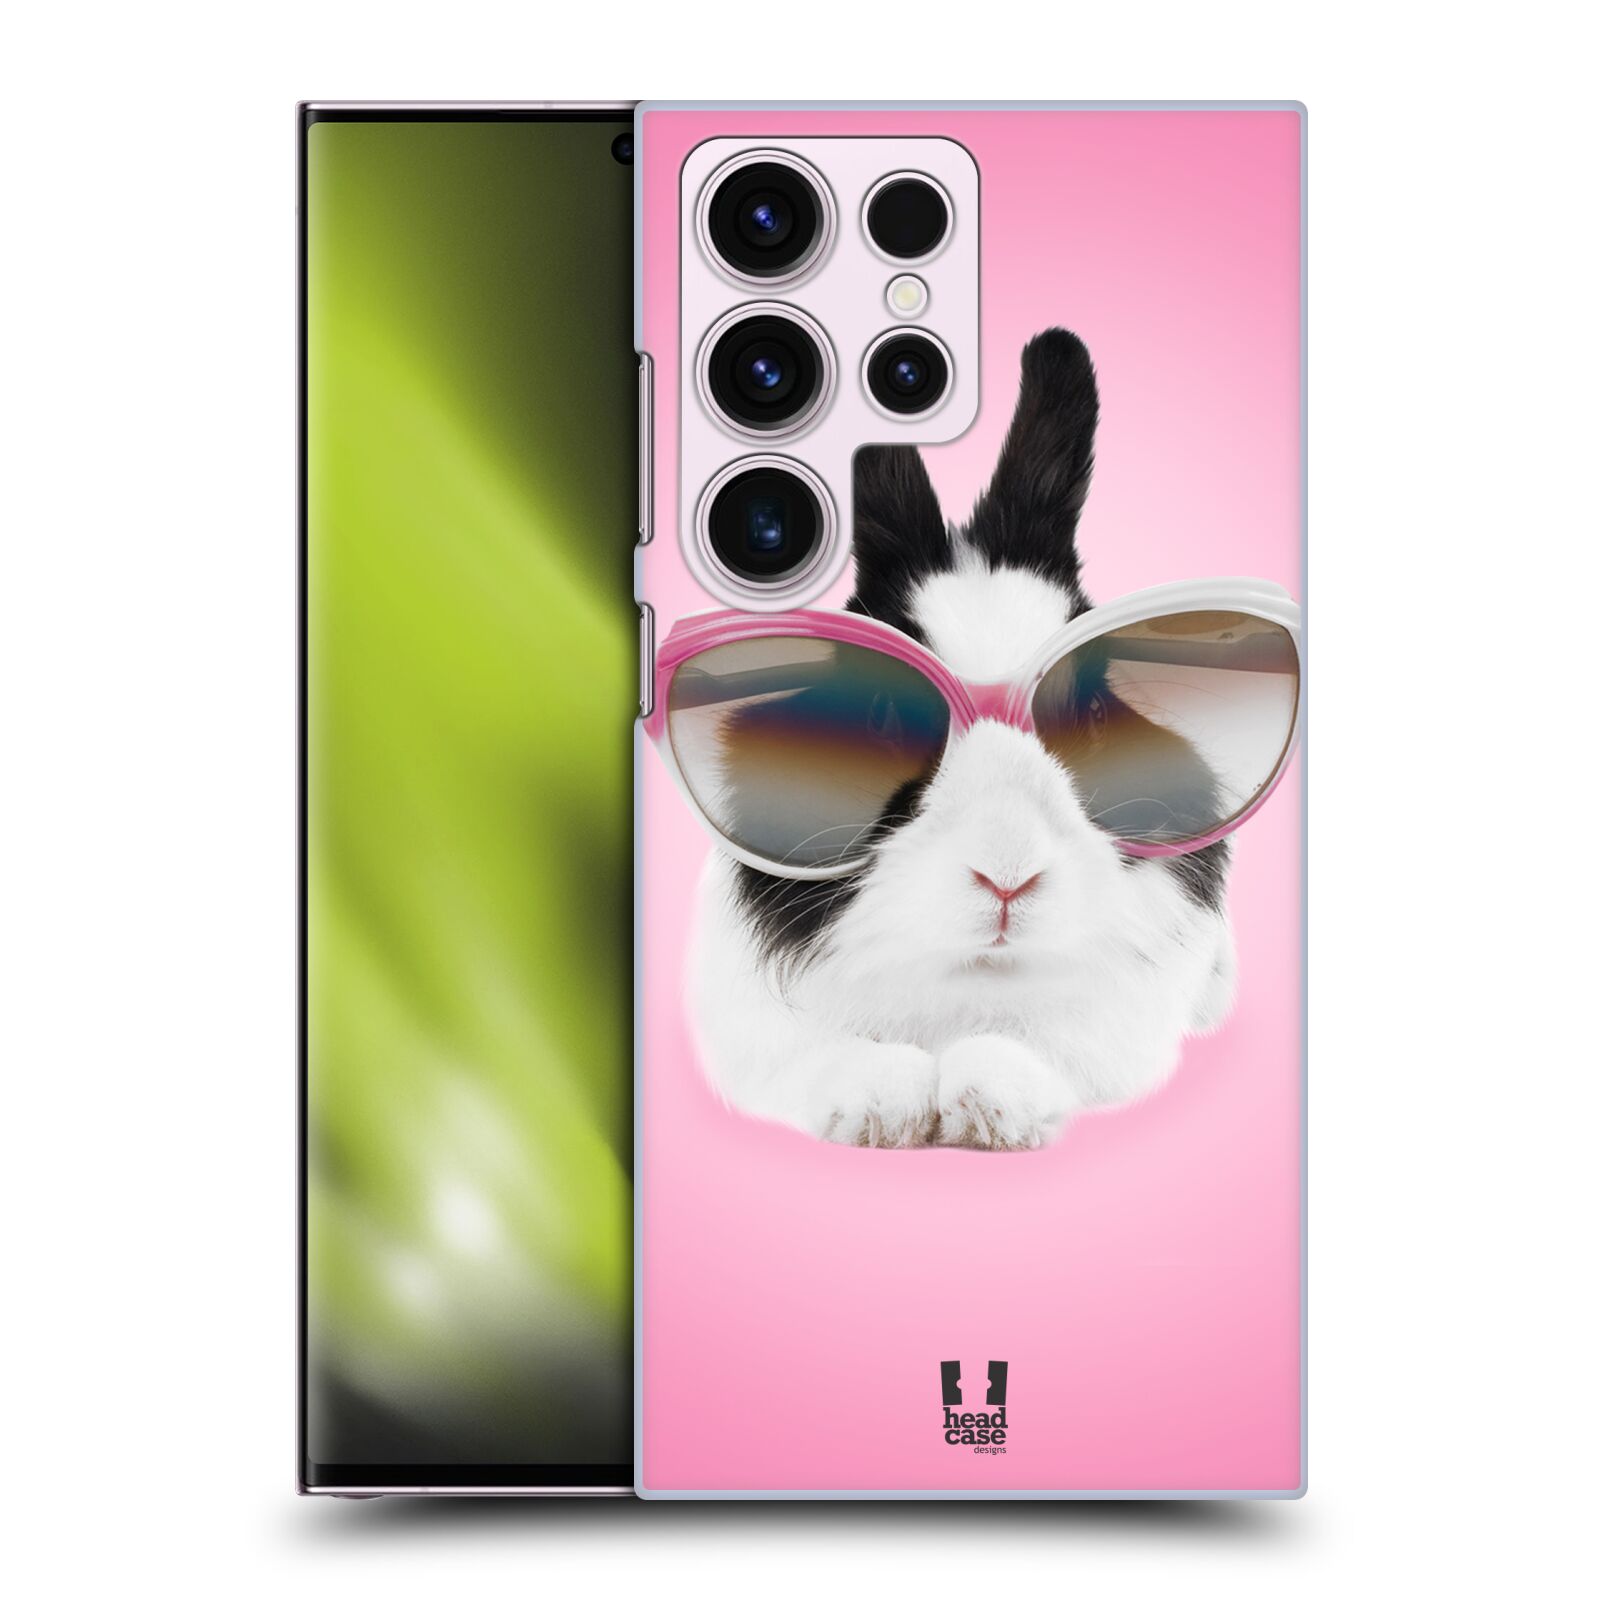 Plastový obal HEAD CASE na mobil Samsung Galaxy S23 ULTRA vzor Legrační zvířátka roztomilý králíček s brýlemi růžová